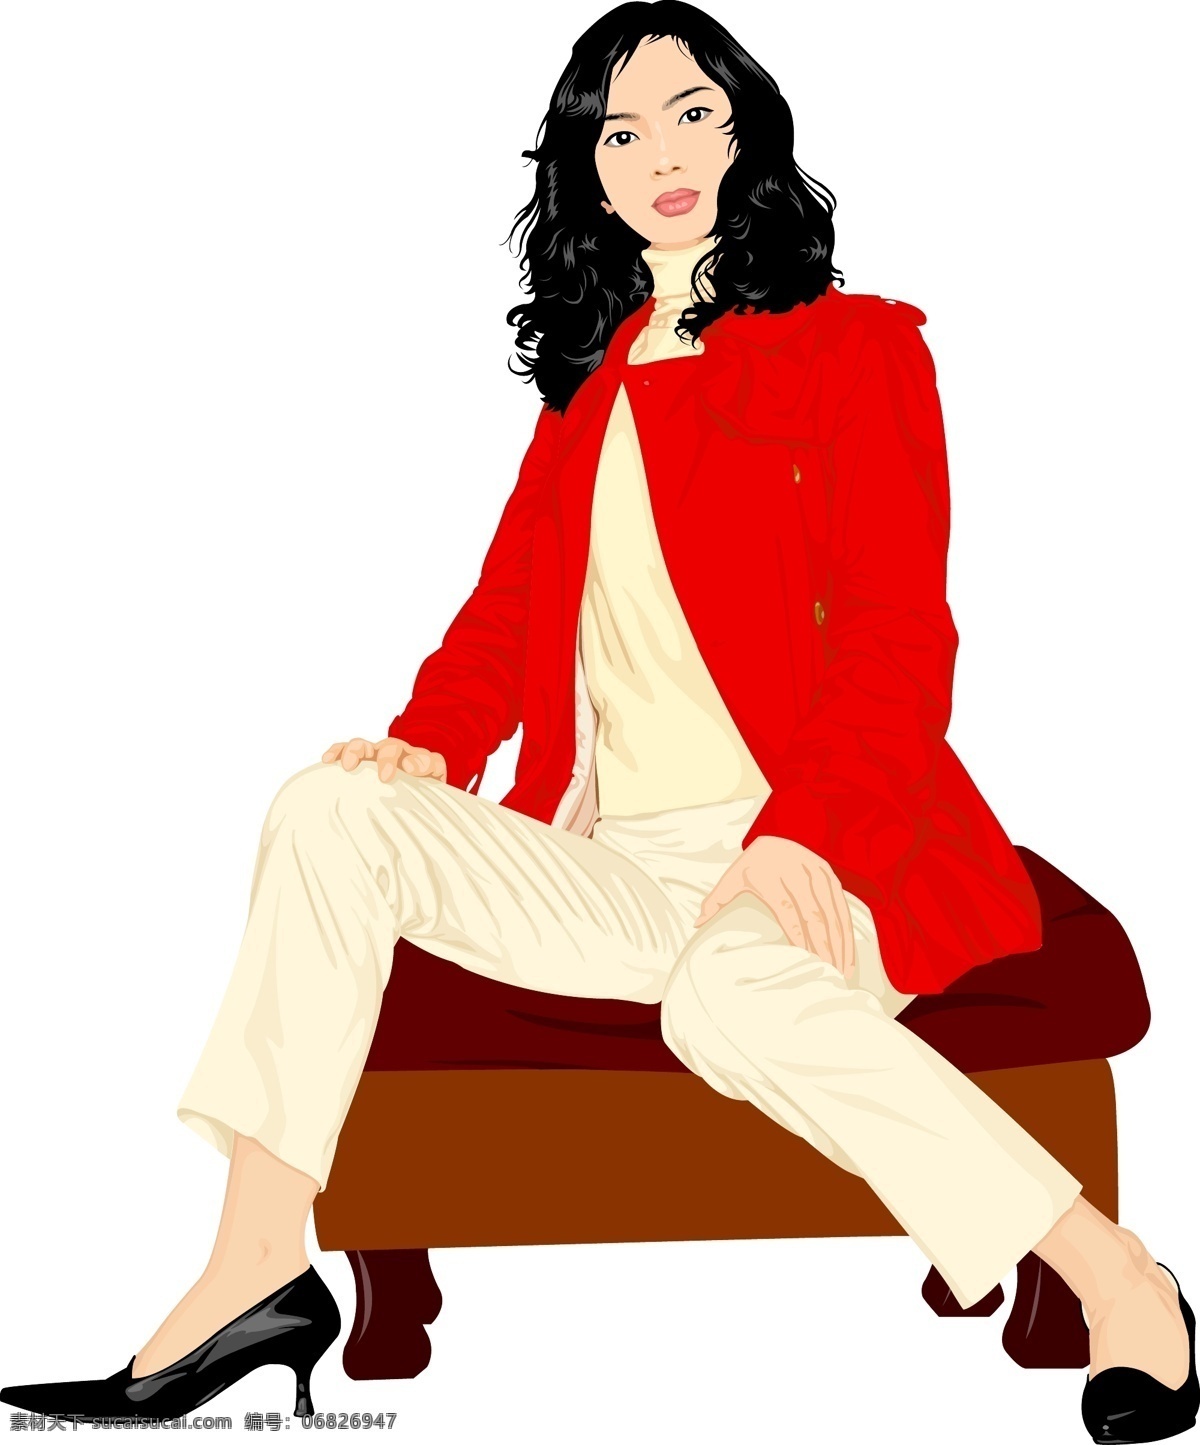 时尚 女性 美女 皮鞋 沙发 矢量人物 烫发 职业装 红色外套 职业套装 黑色高跟鞋 矢量图